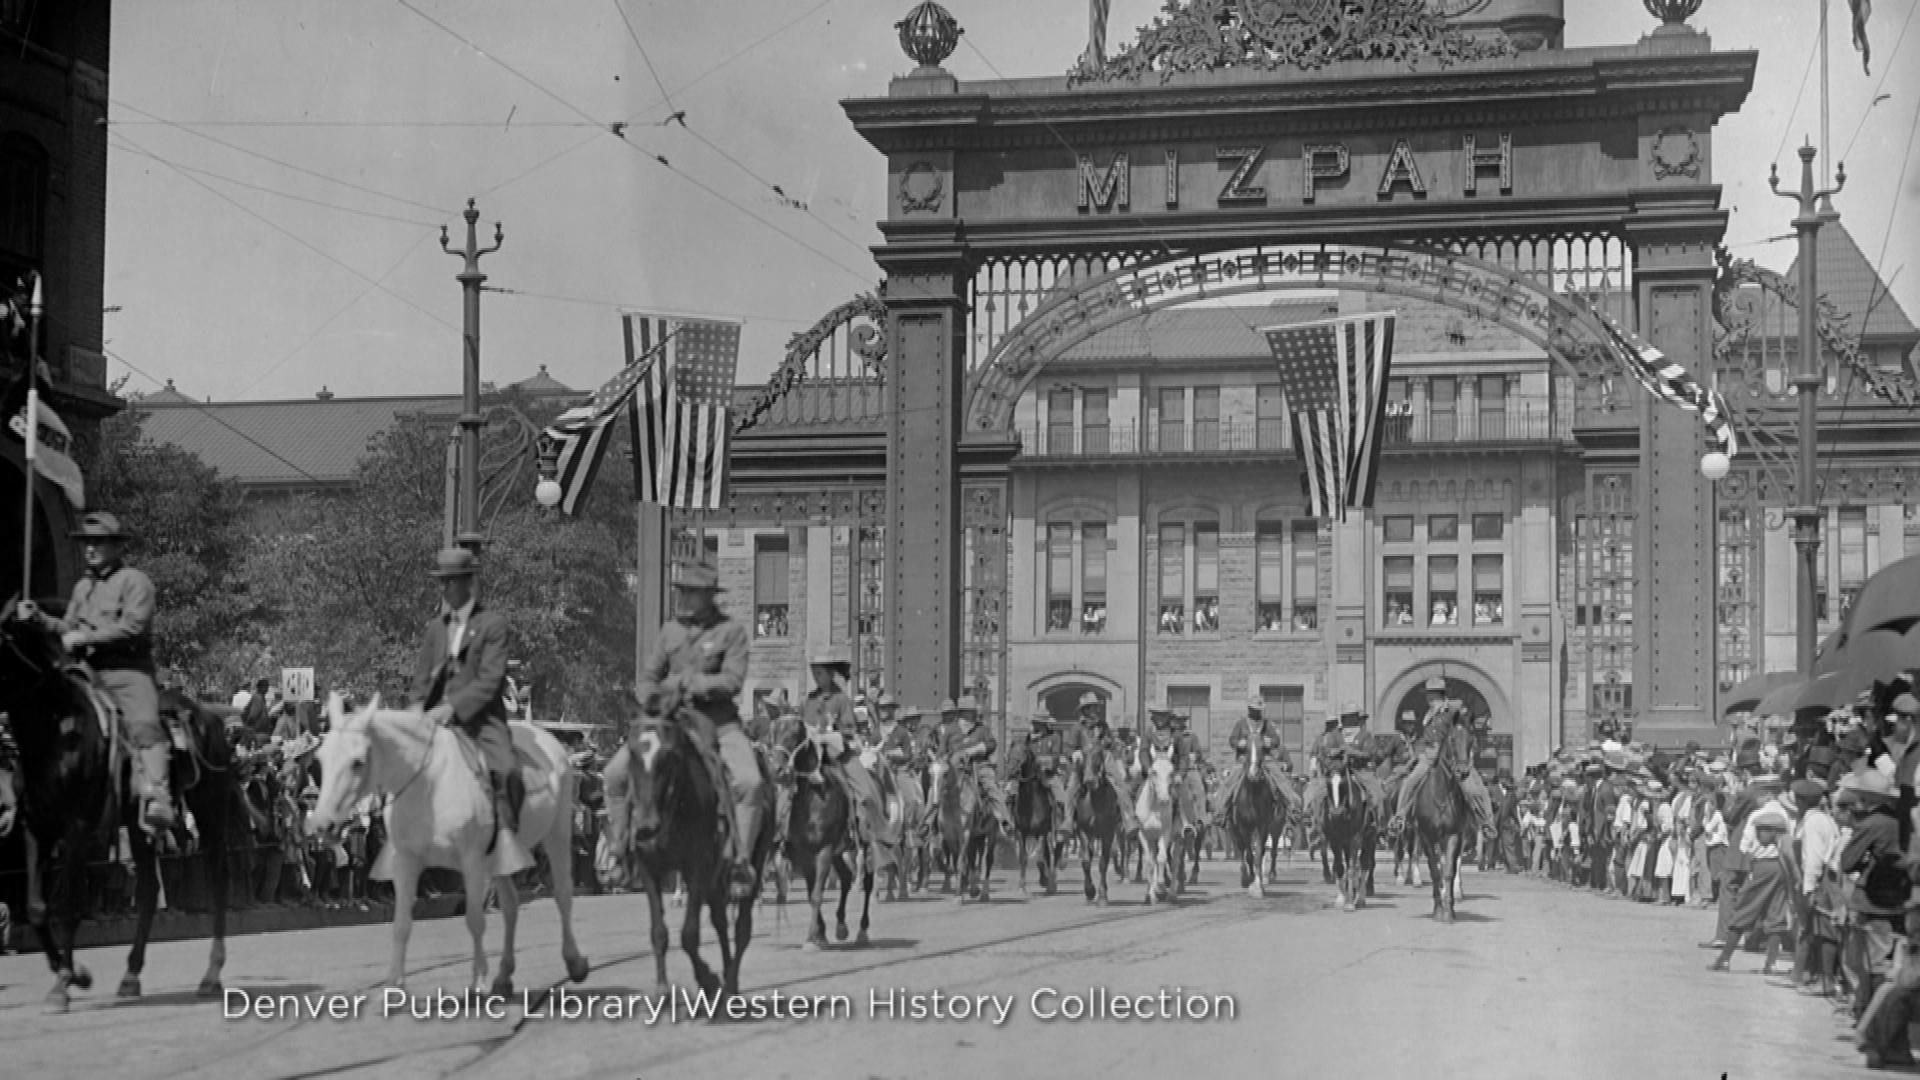 Union Station 's arch (credit: Denver Public Library, Western History Collection)'s arch (credit: Denver Public Library, Western History Collection)